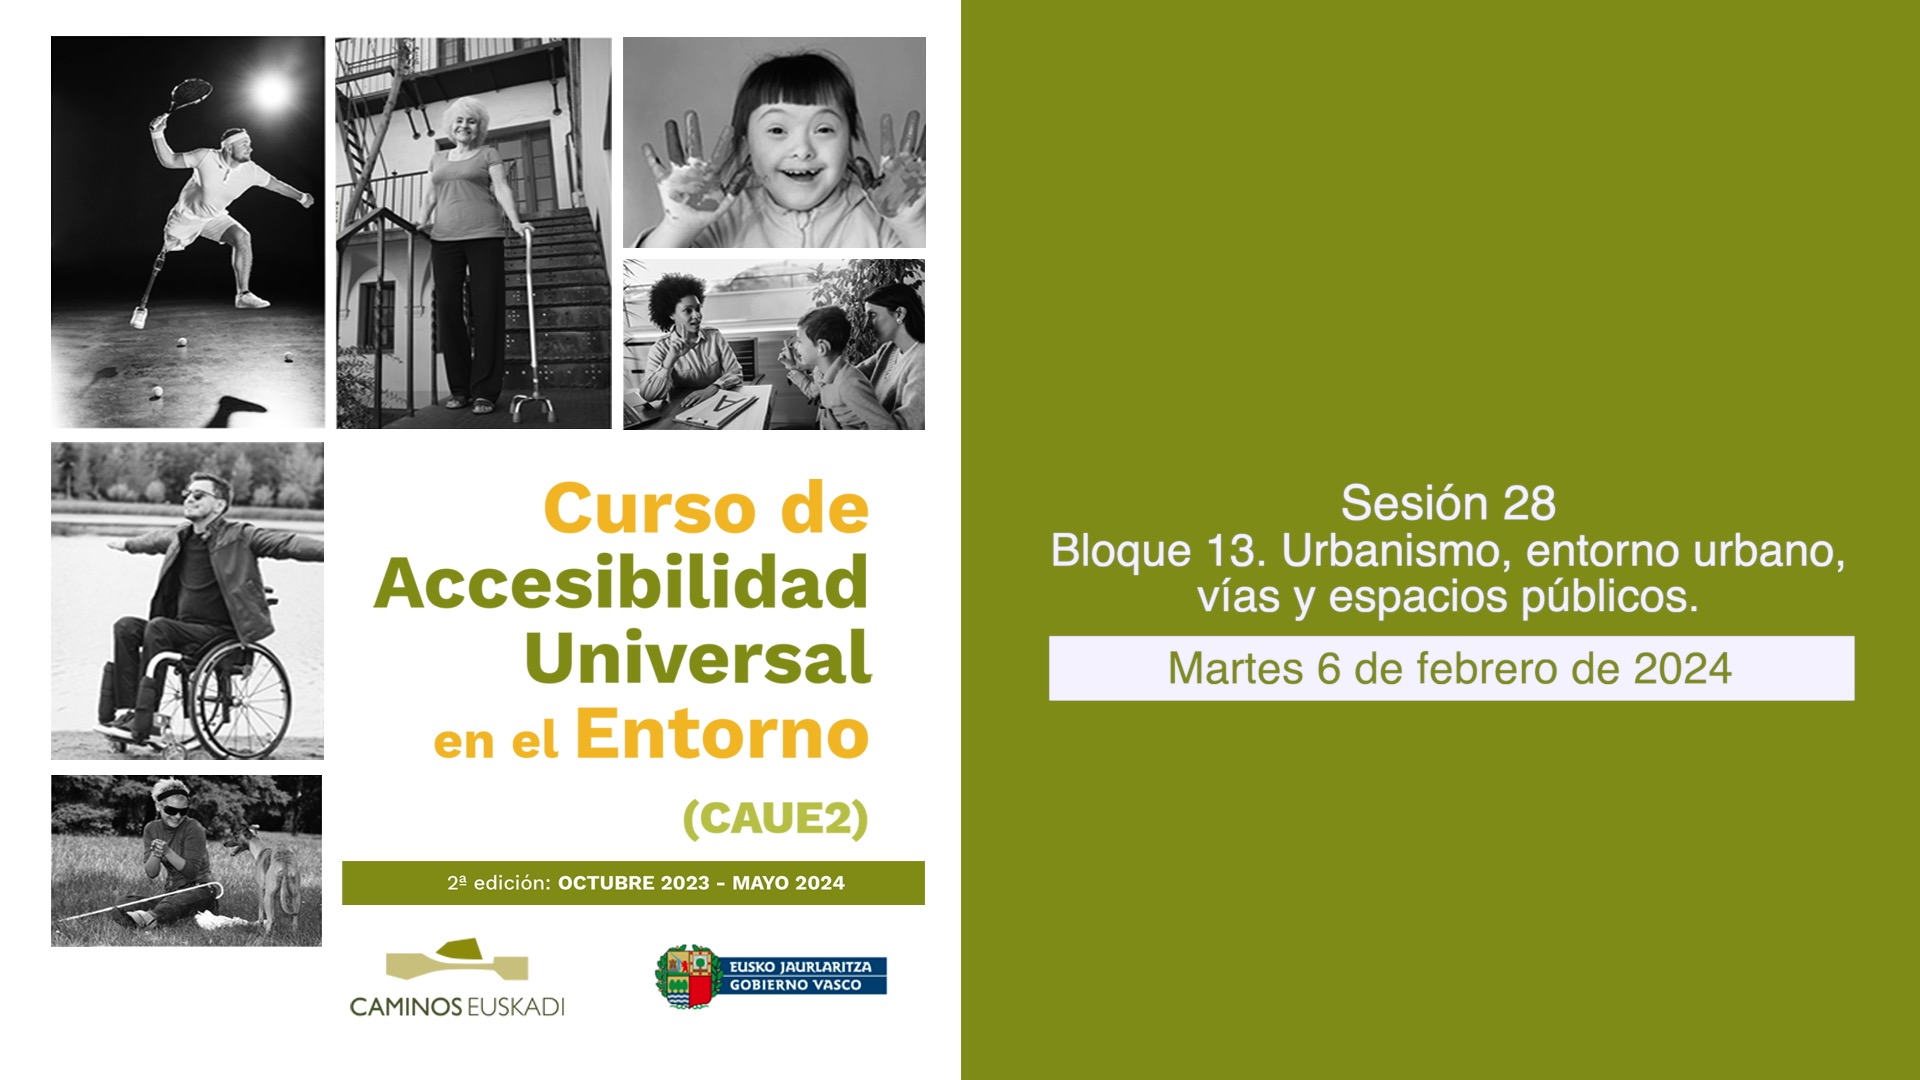 Sesión 28 - Bloque 13. Urbanismo, entorno urbano, vías y espacios públicos.